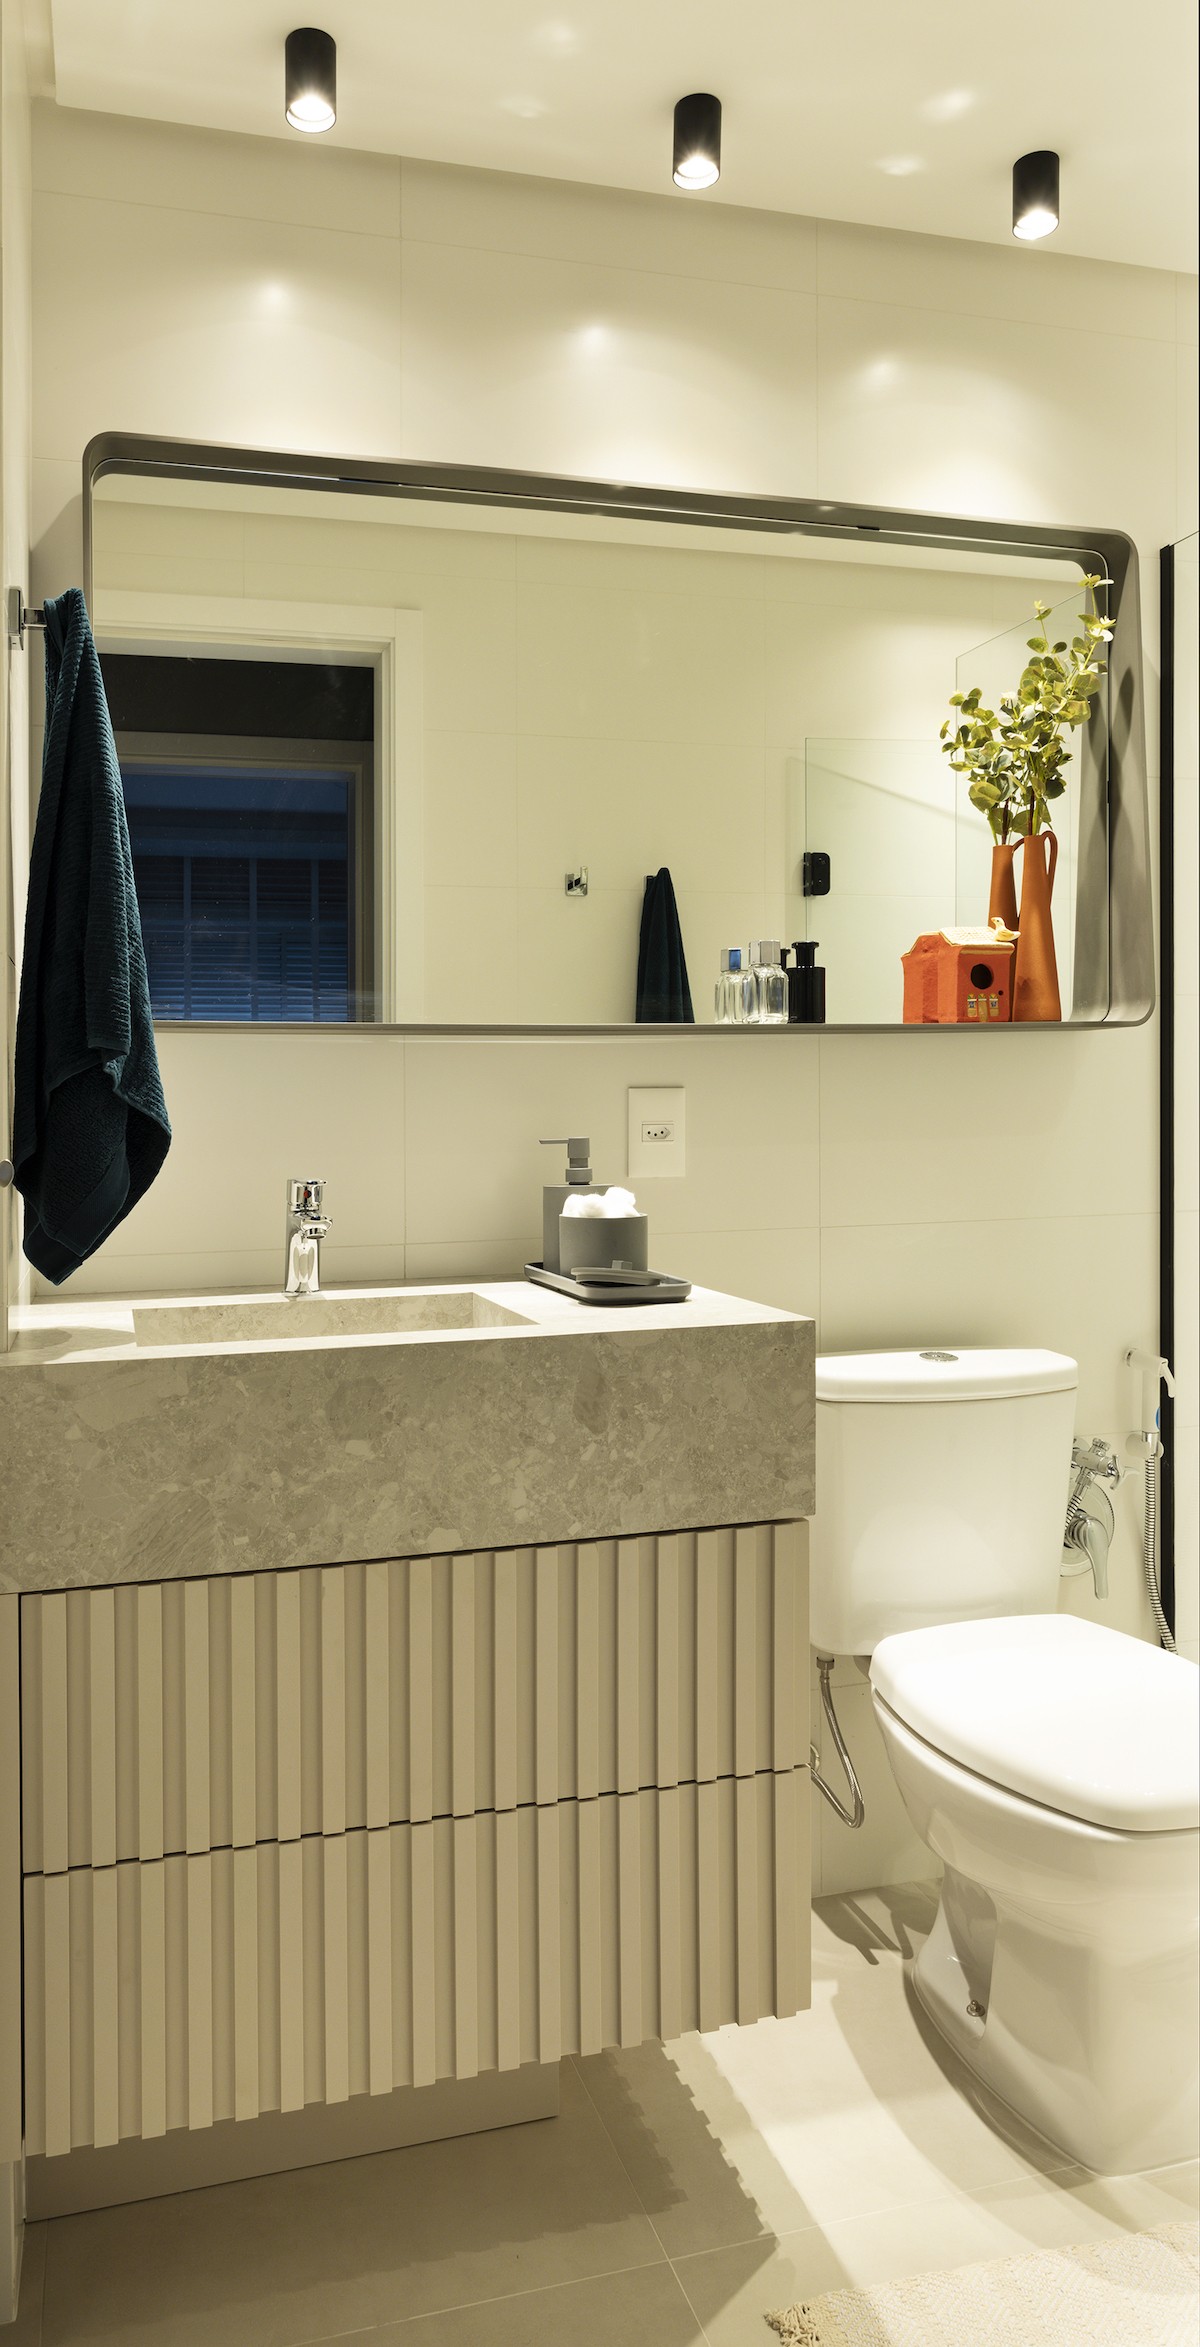 BANHEIRO | A ideia do banheiro social foi dar uma "cara"de lavabo. O espelho com moldura orgânica em aço inox vira uma prateleira. A marcenaria tem um ar dinâmico (Foto: Mariana Boro / Divulgação)